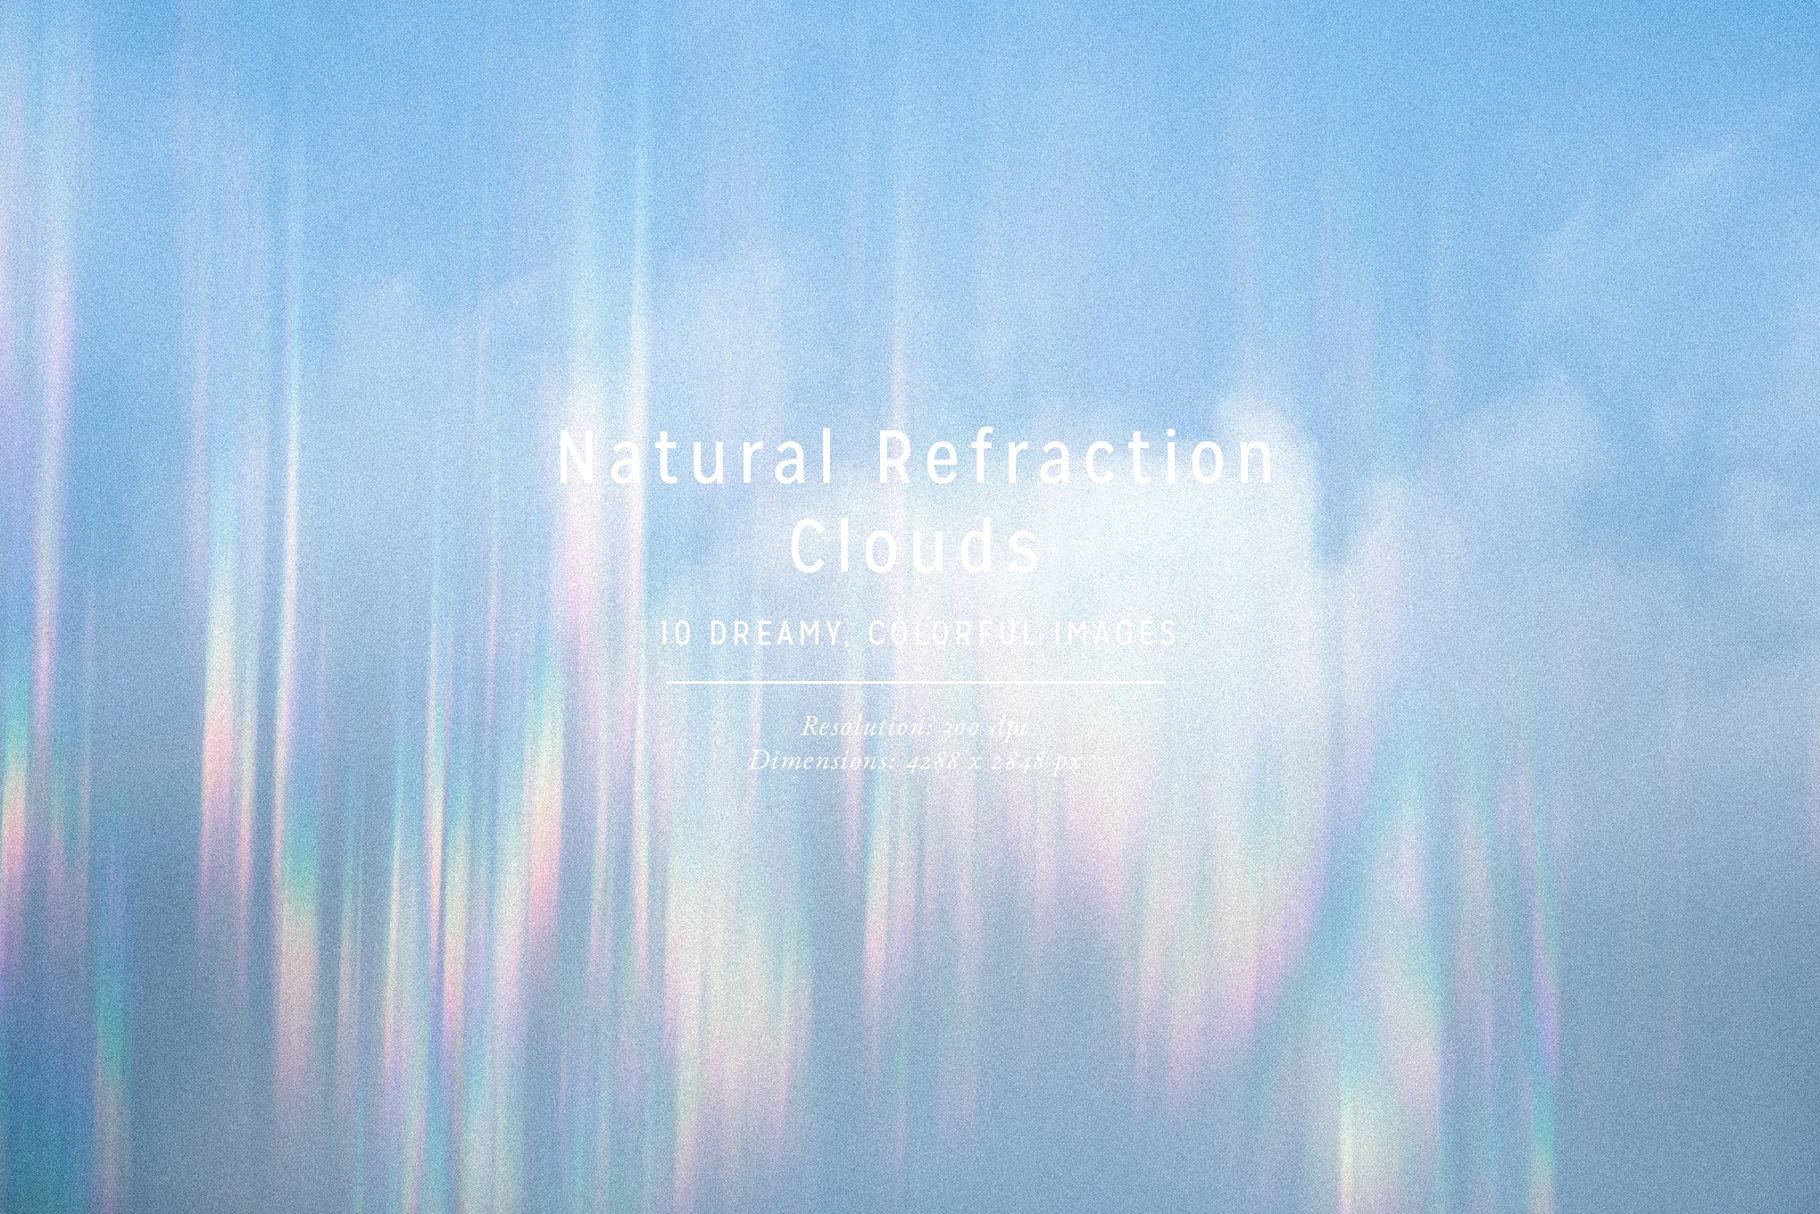 彩虹折射云彩高清照片素材 Natural Refraction: Clouds插图2